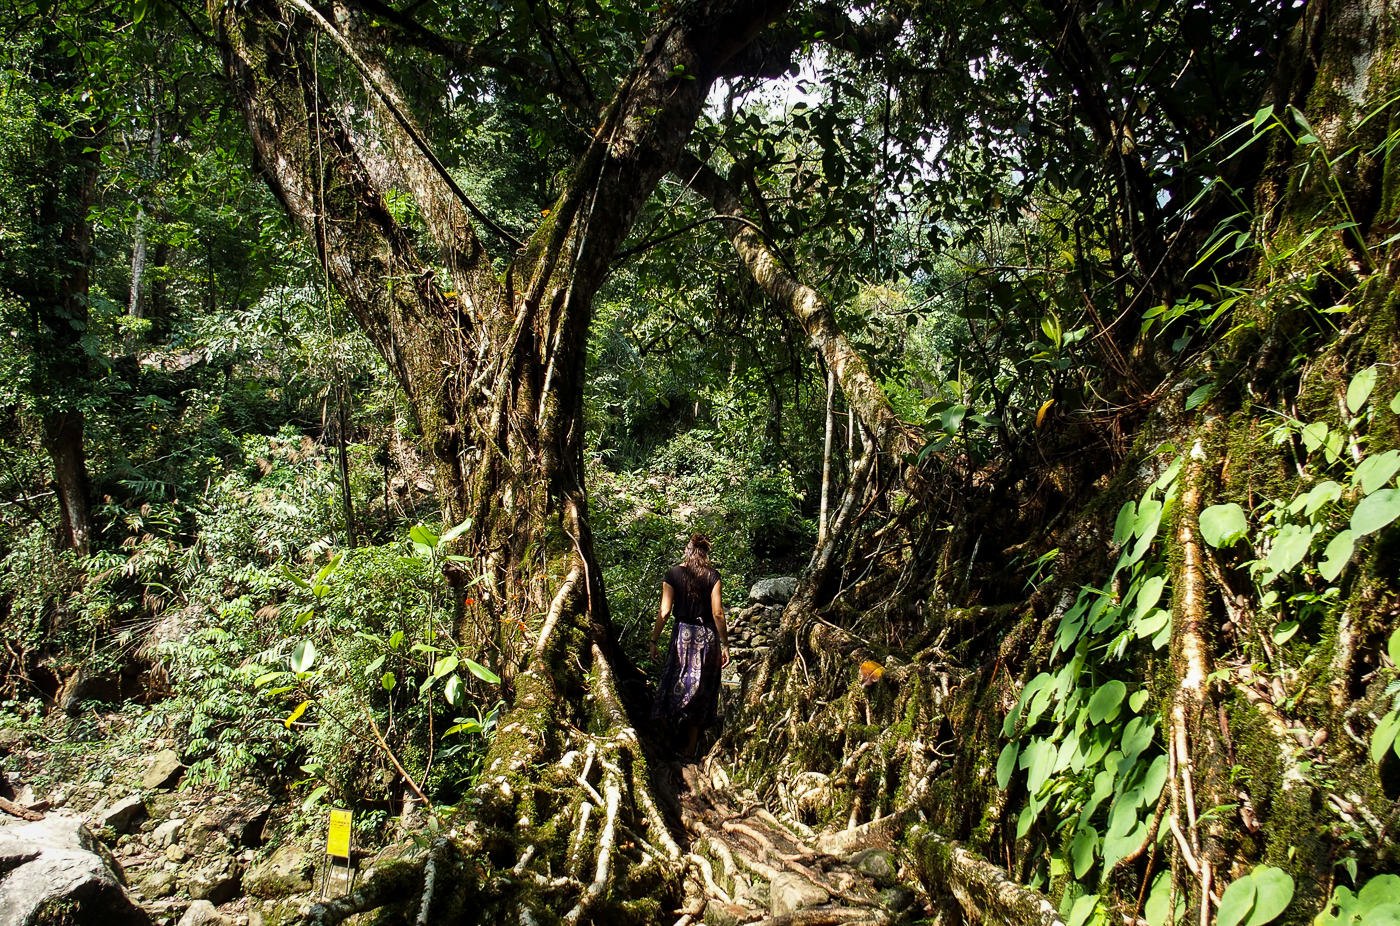 Taming the Jungle in Meghalaya